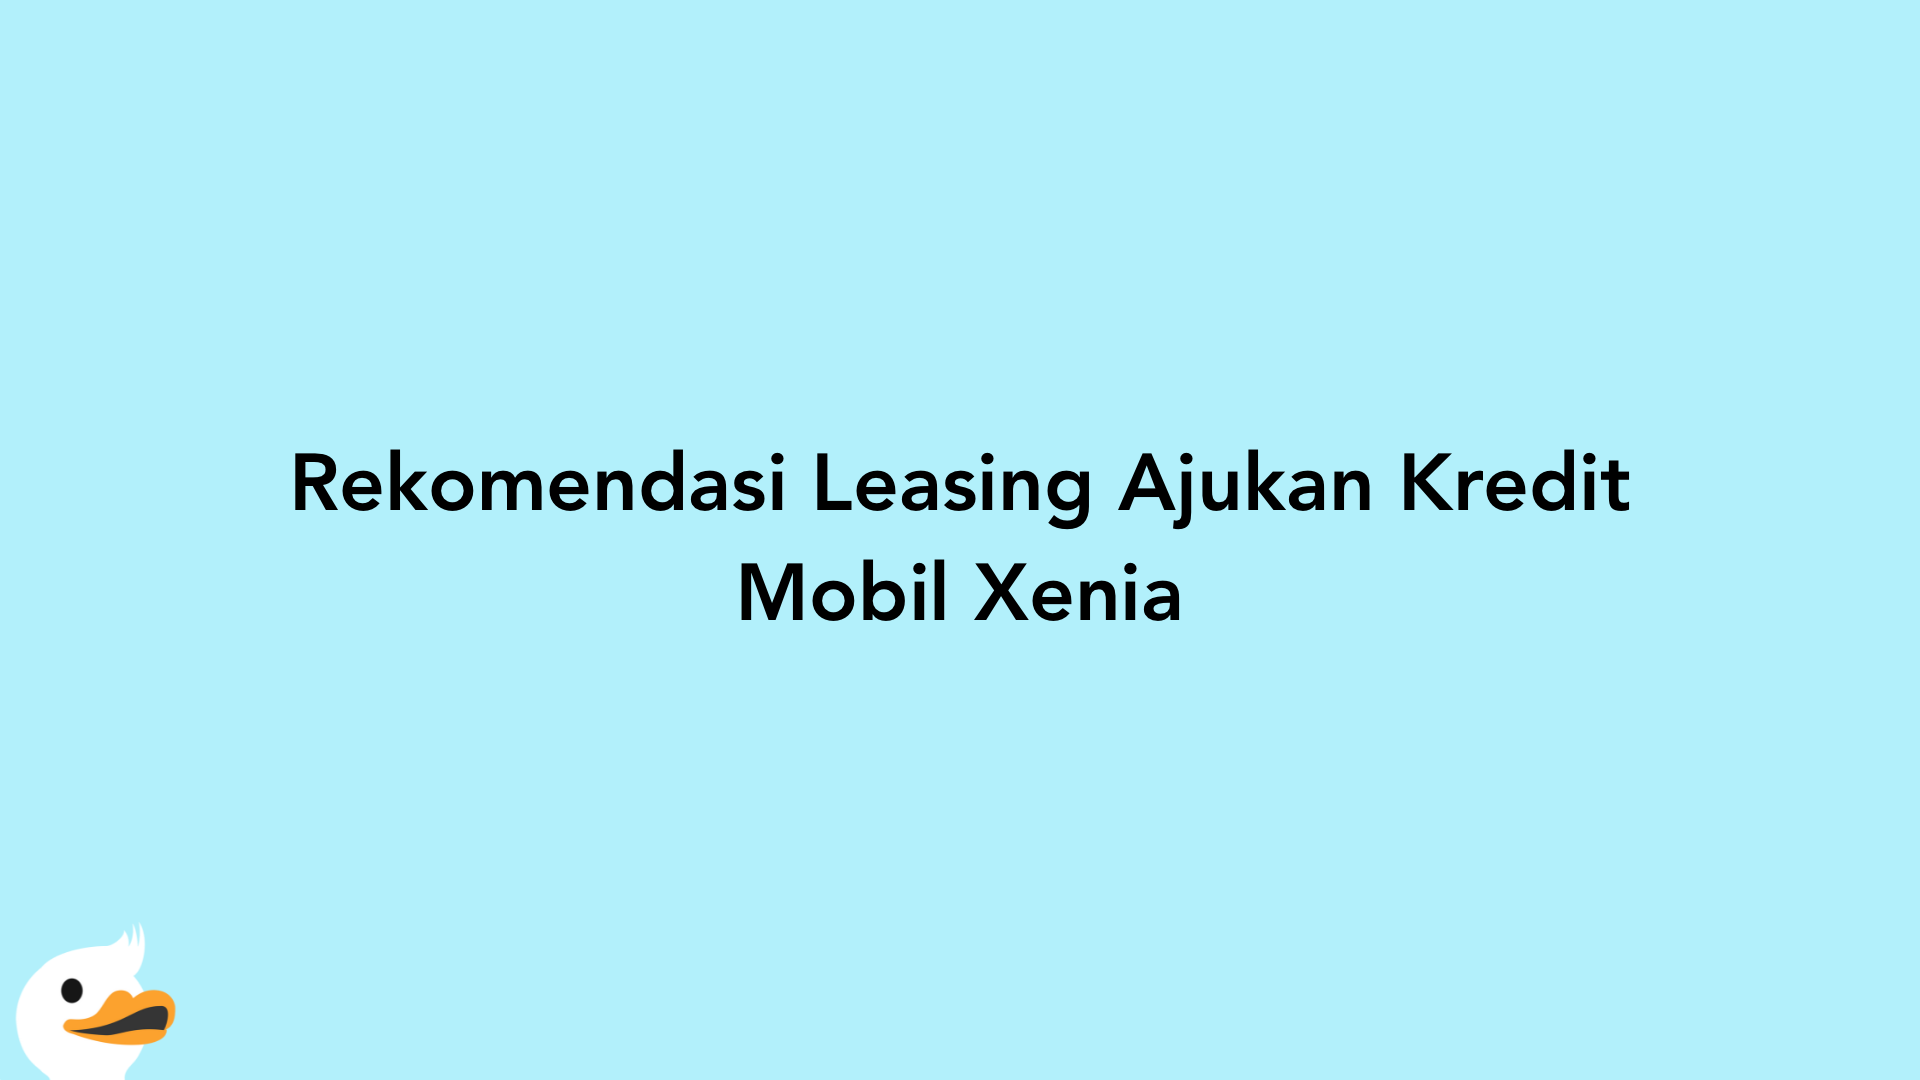 Rekomendasi Leasing Ajukan Kredit Mobil Xenia